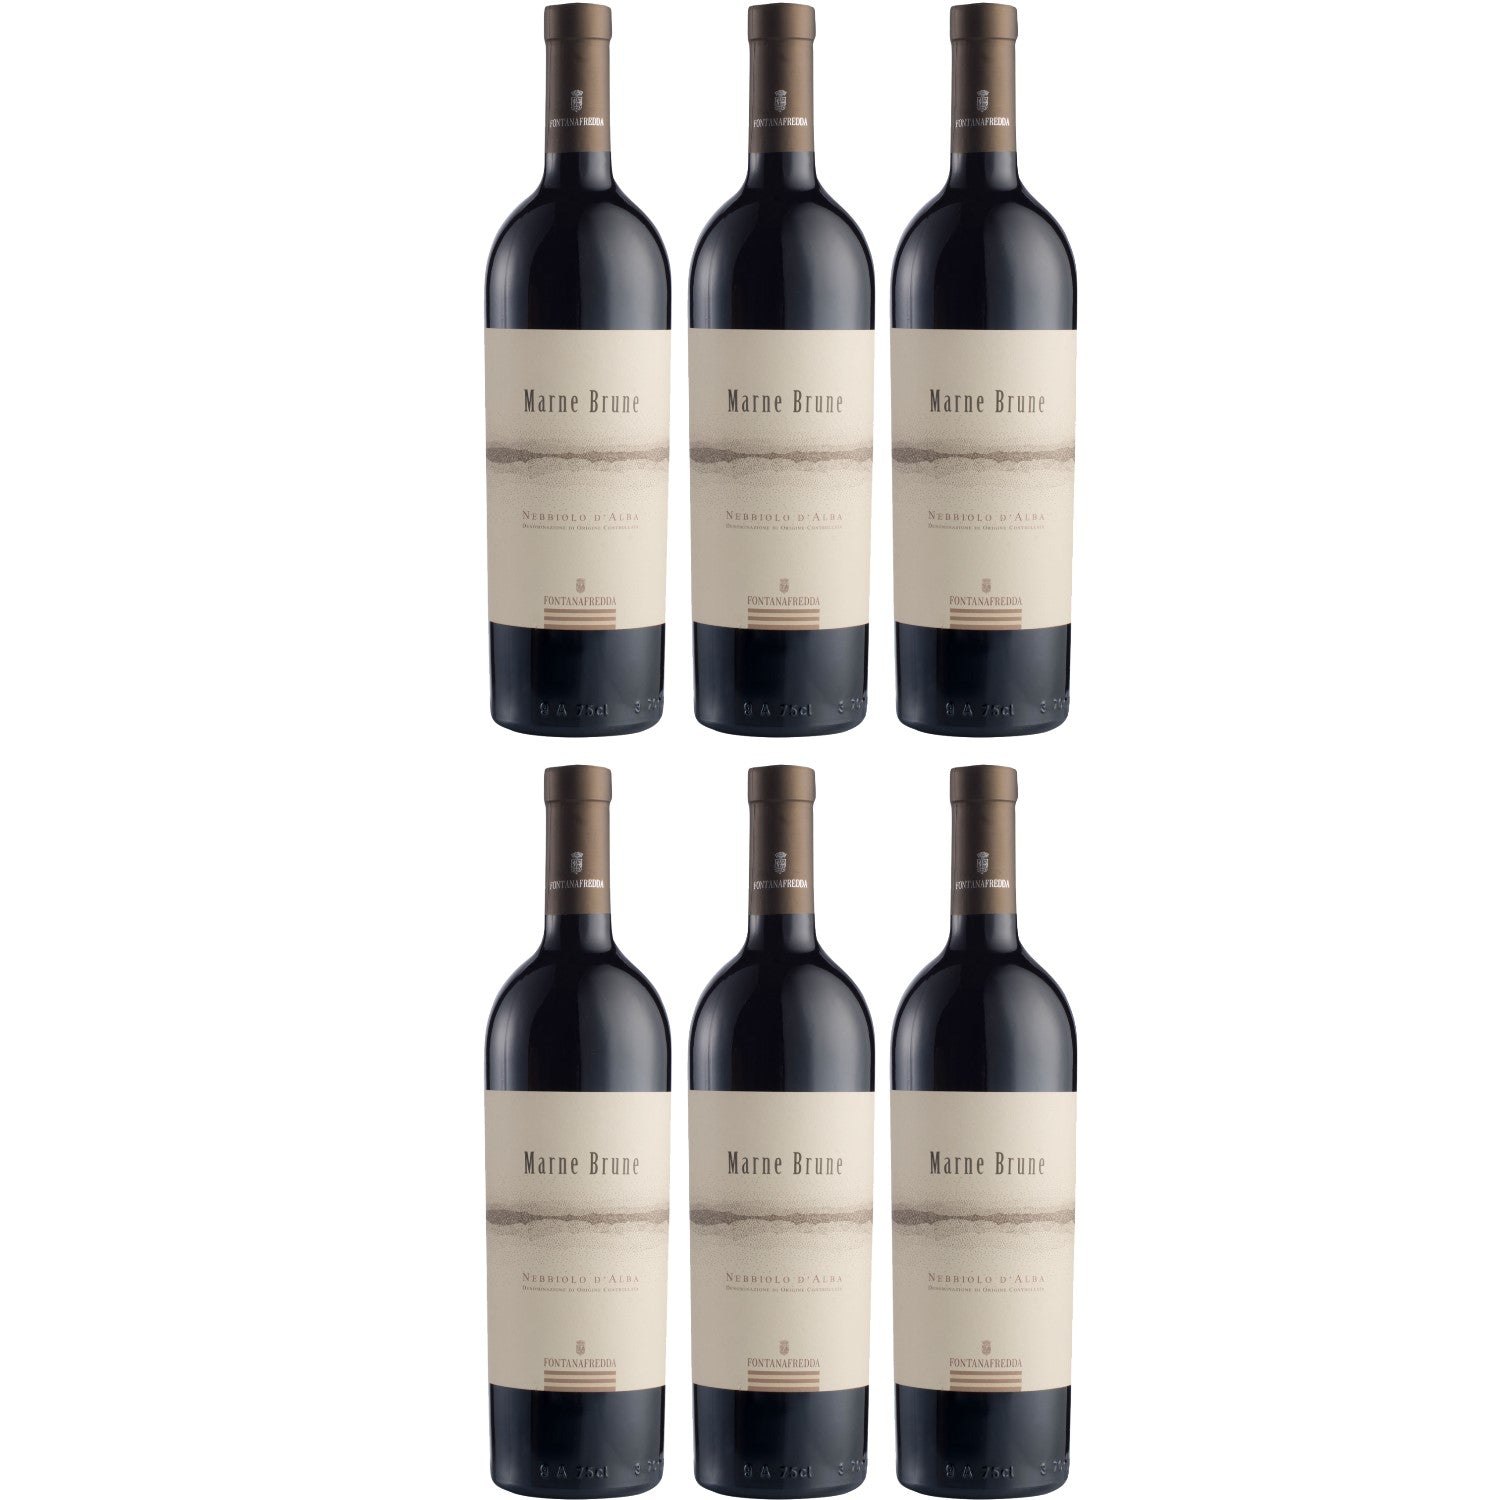 Fontanafredda Marne Brune Nebbiolo d'Alba Rotwein Wein trocken Italien (6 x 0.75l) - Versanel -